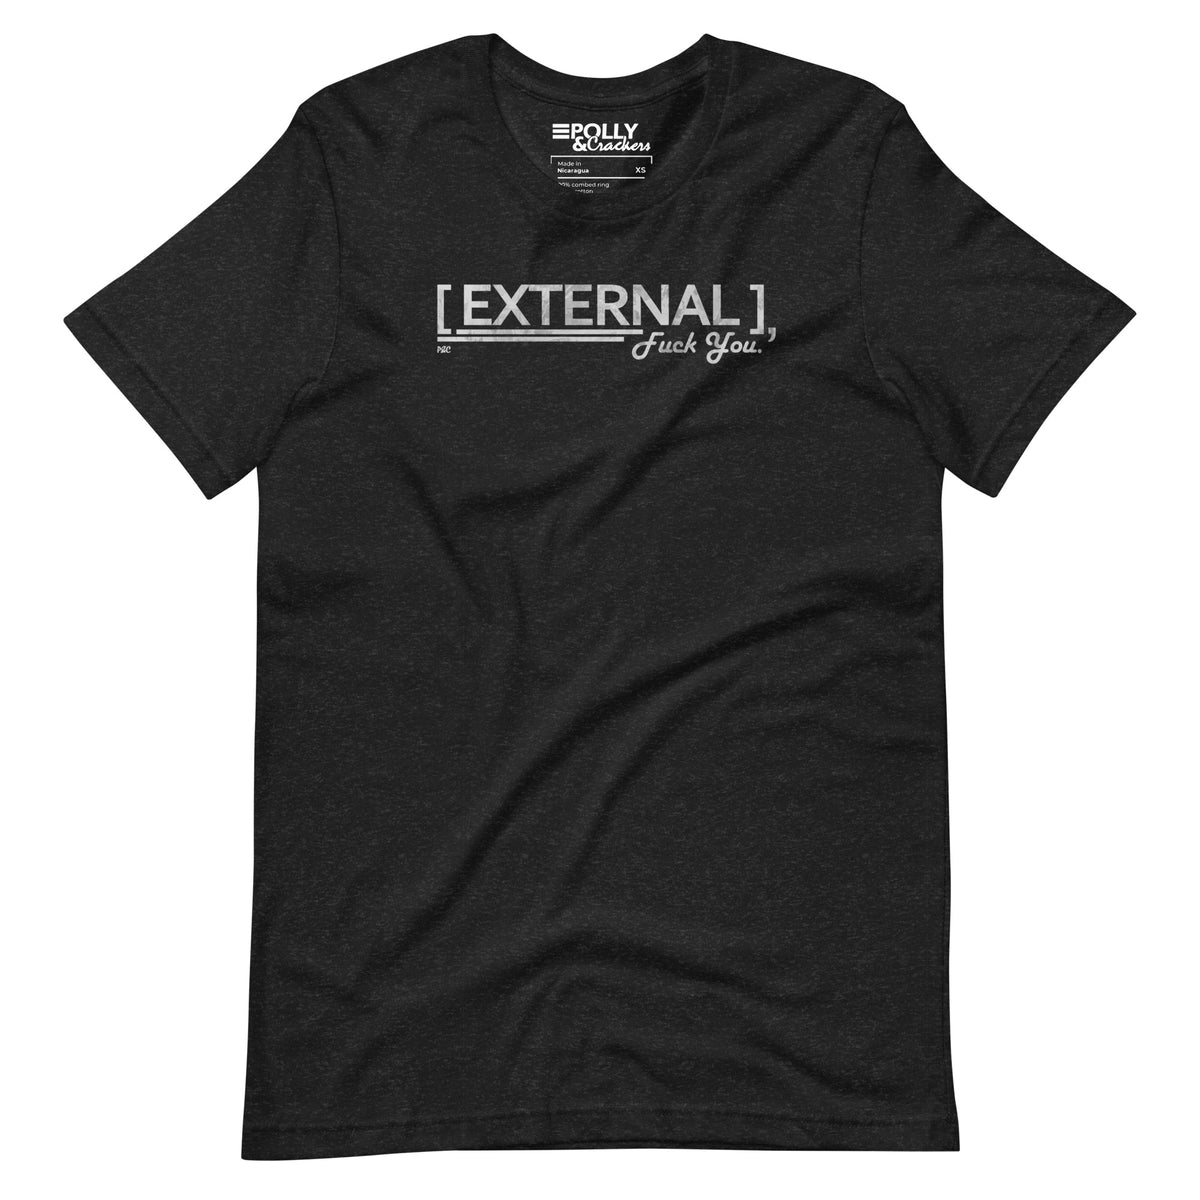 External - Shirt